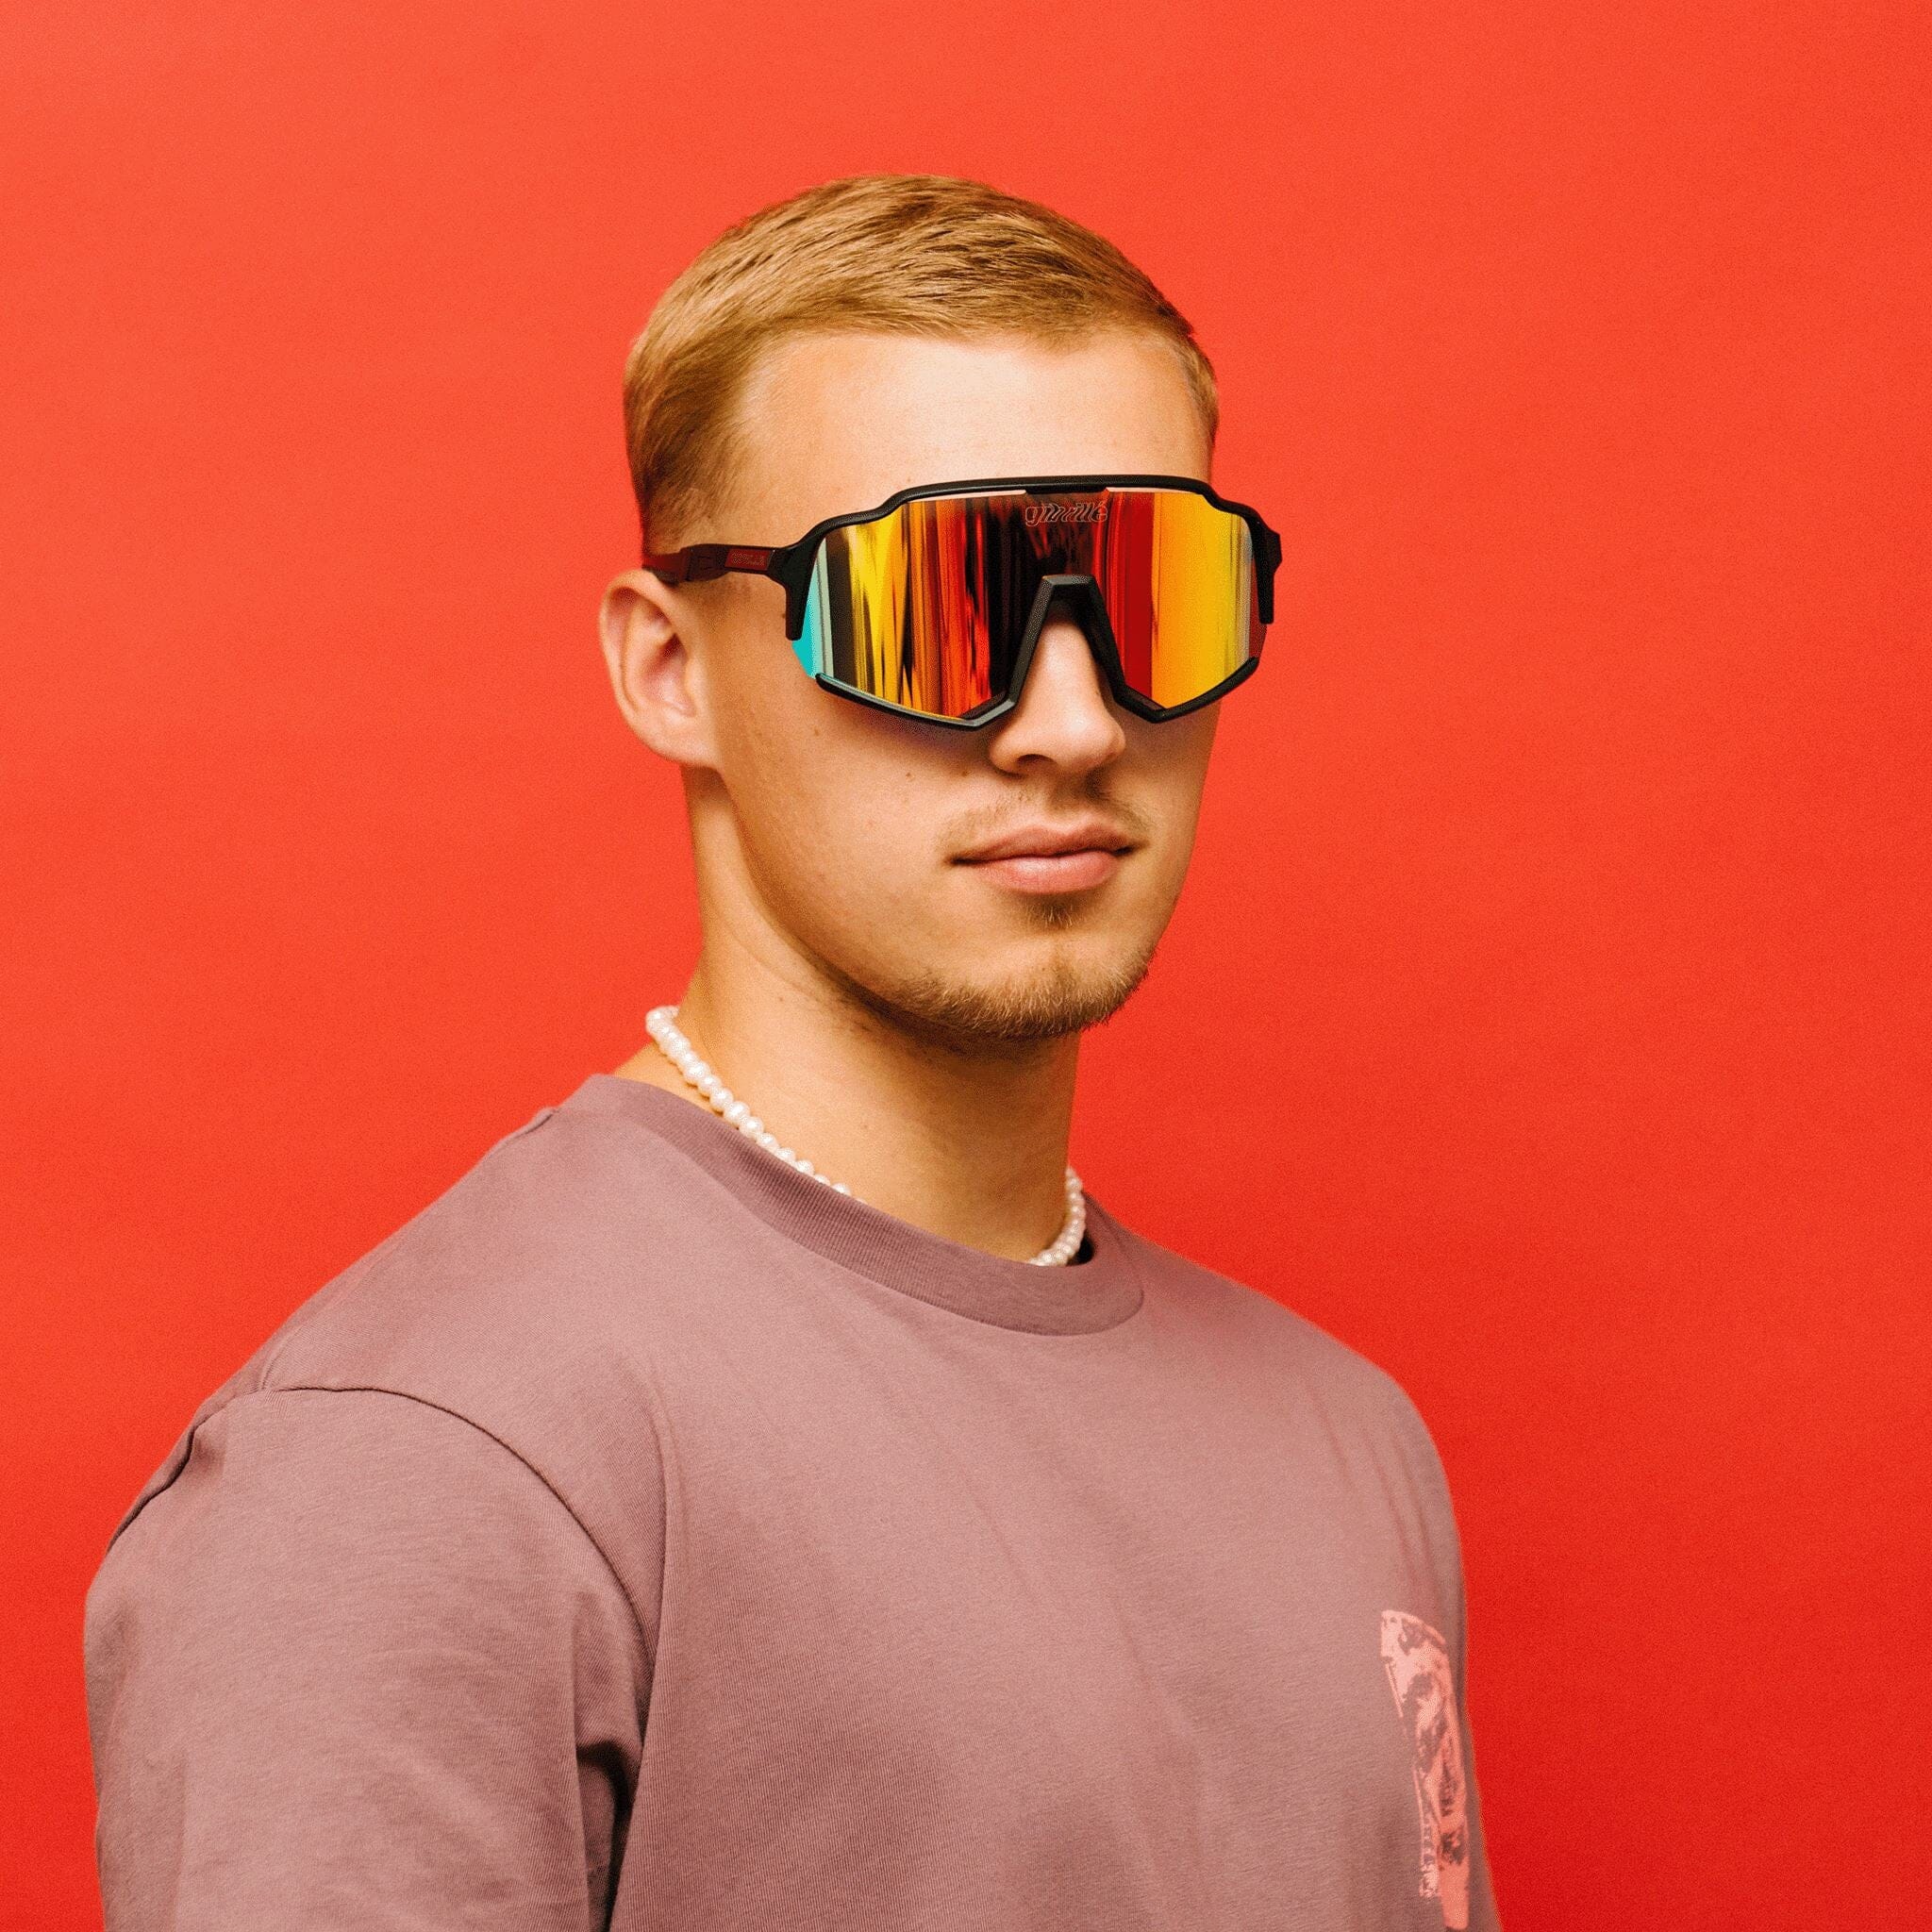 gib.rille-sonnenbrille-future-glasses-schnelle-brille-techno-brille-fahrradsonnebrille Sonnenbrille mit verlaufenden Gläsern - Sonnenbrille mit verspiegelten Gläsern, Sonnenbrille mit farbigen Gläsern